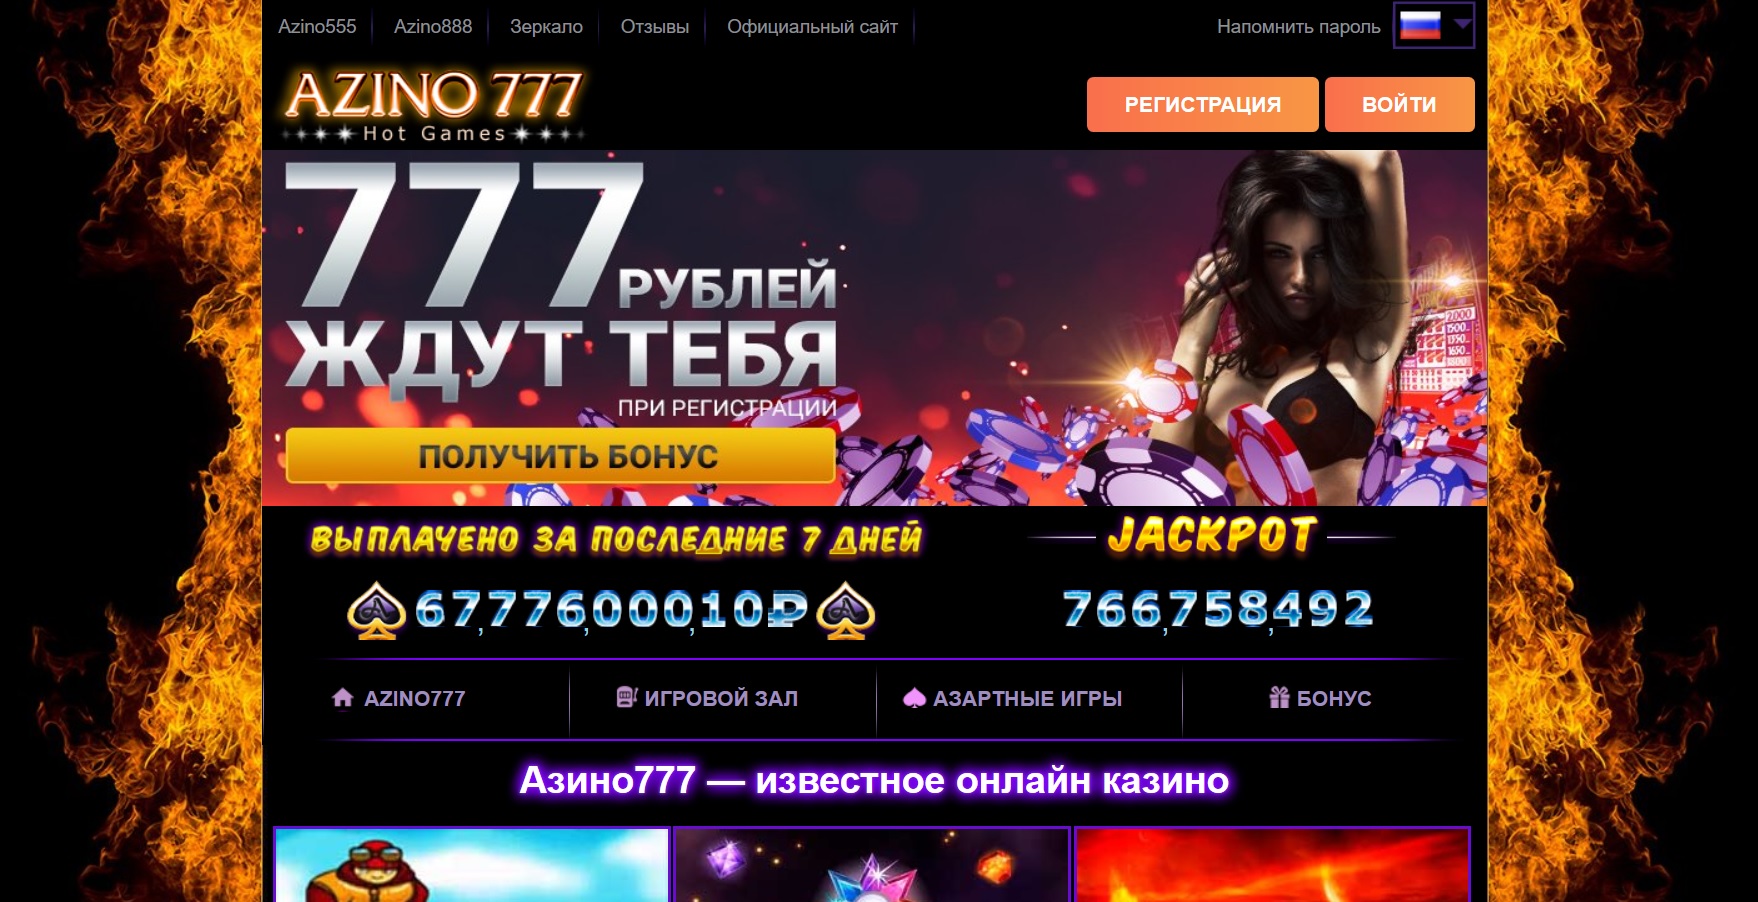 Азино777 официальный сайт azino777 official ru com онлайн казино вулкан старс бонус 555 рублей